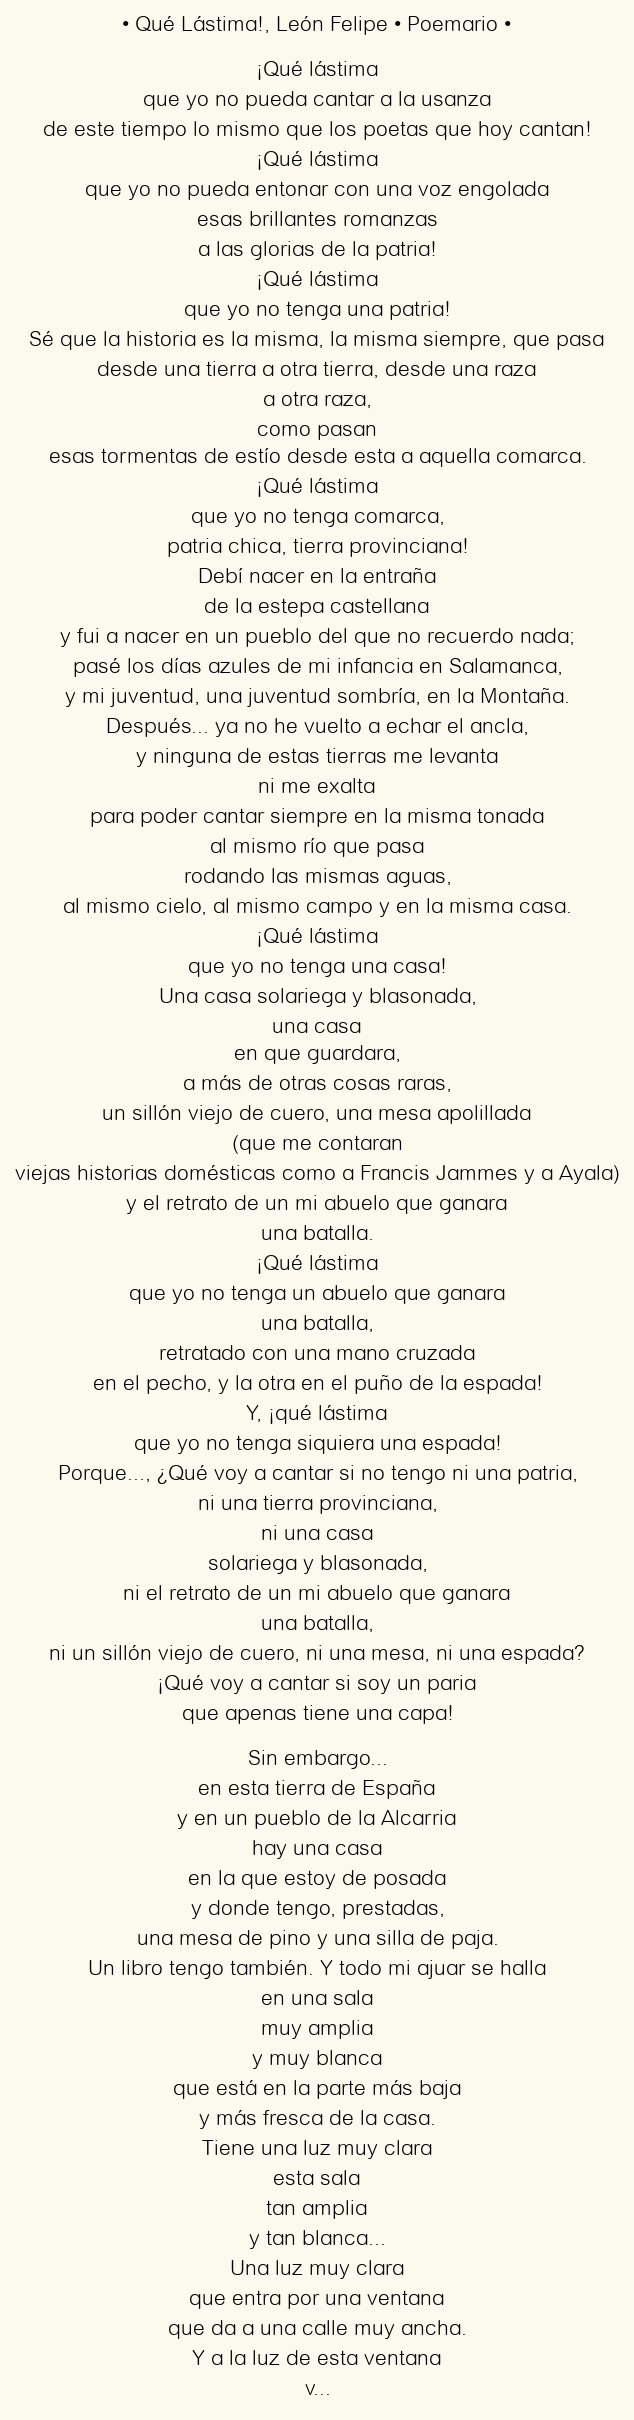 Imagen con el poema Qué Lástima!, por León Felipe